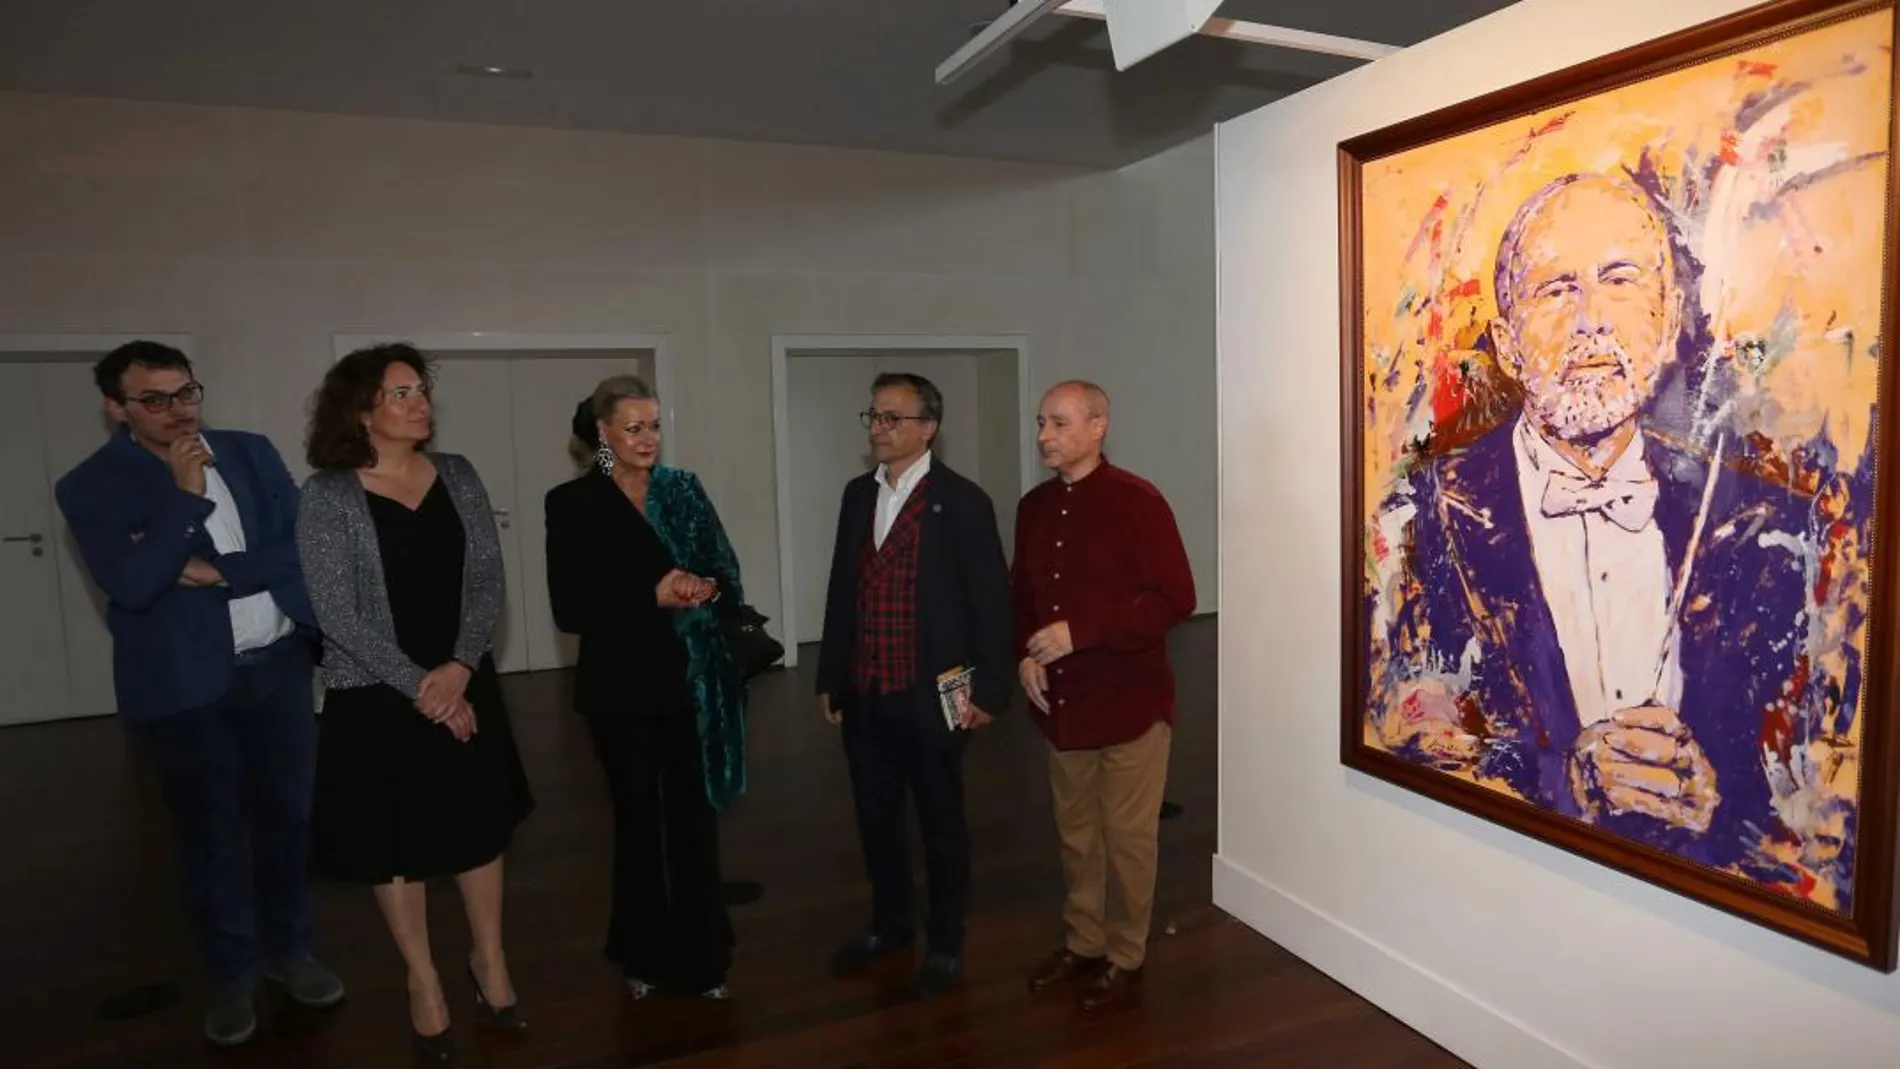 La consejera García-Cirac observa el cuadro del músico realizado por Miguel Elías, junto a Karin López Cobos, Tomás del Bien y el propio artista